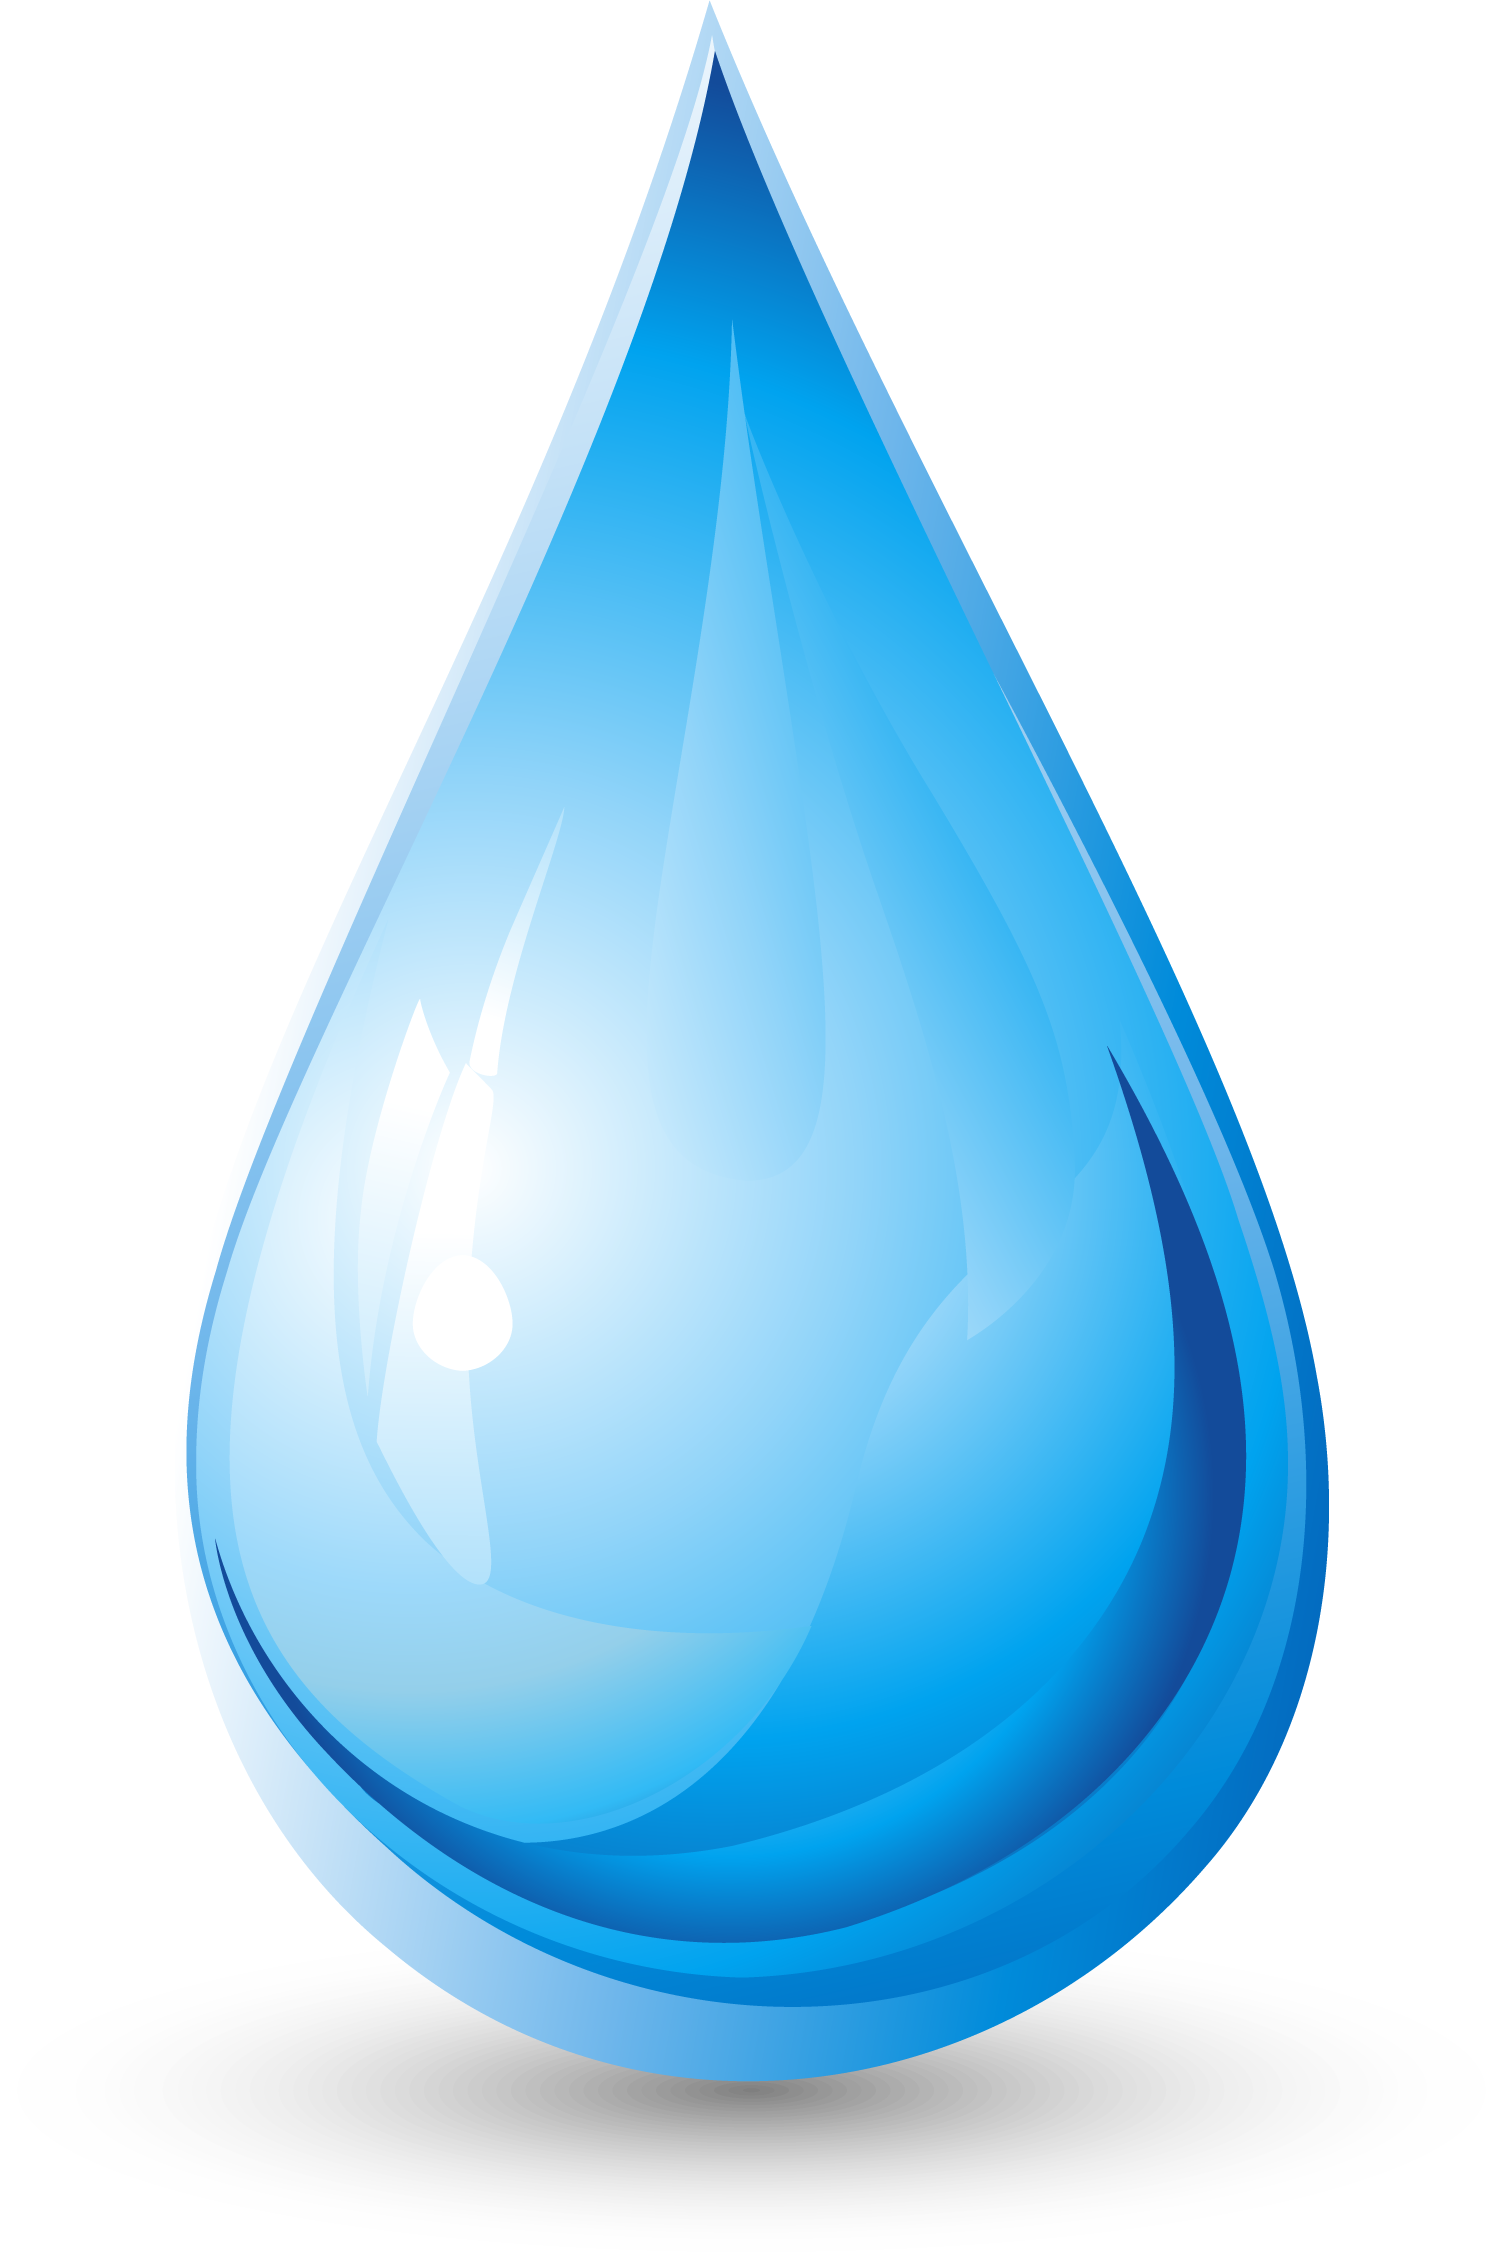 Download Download Vector Of Drop Water-Drop Water Free Download ...